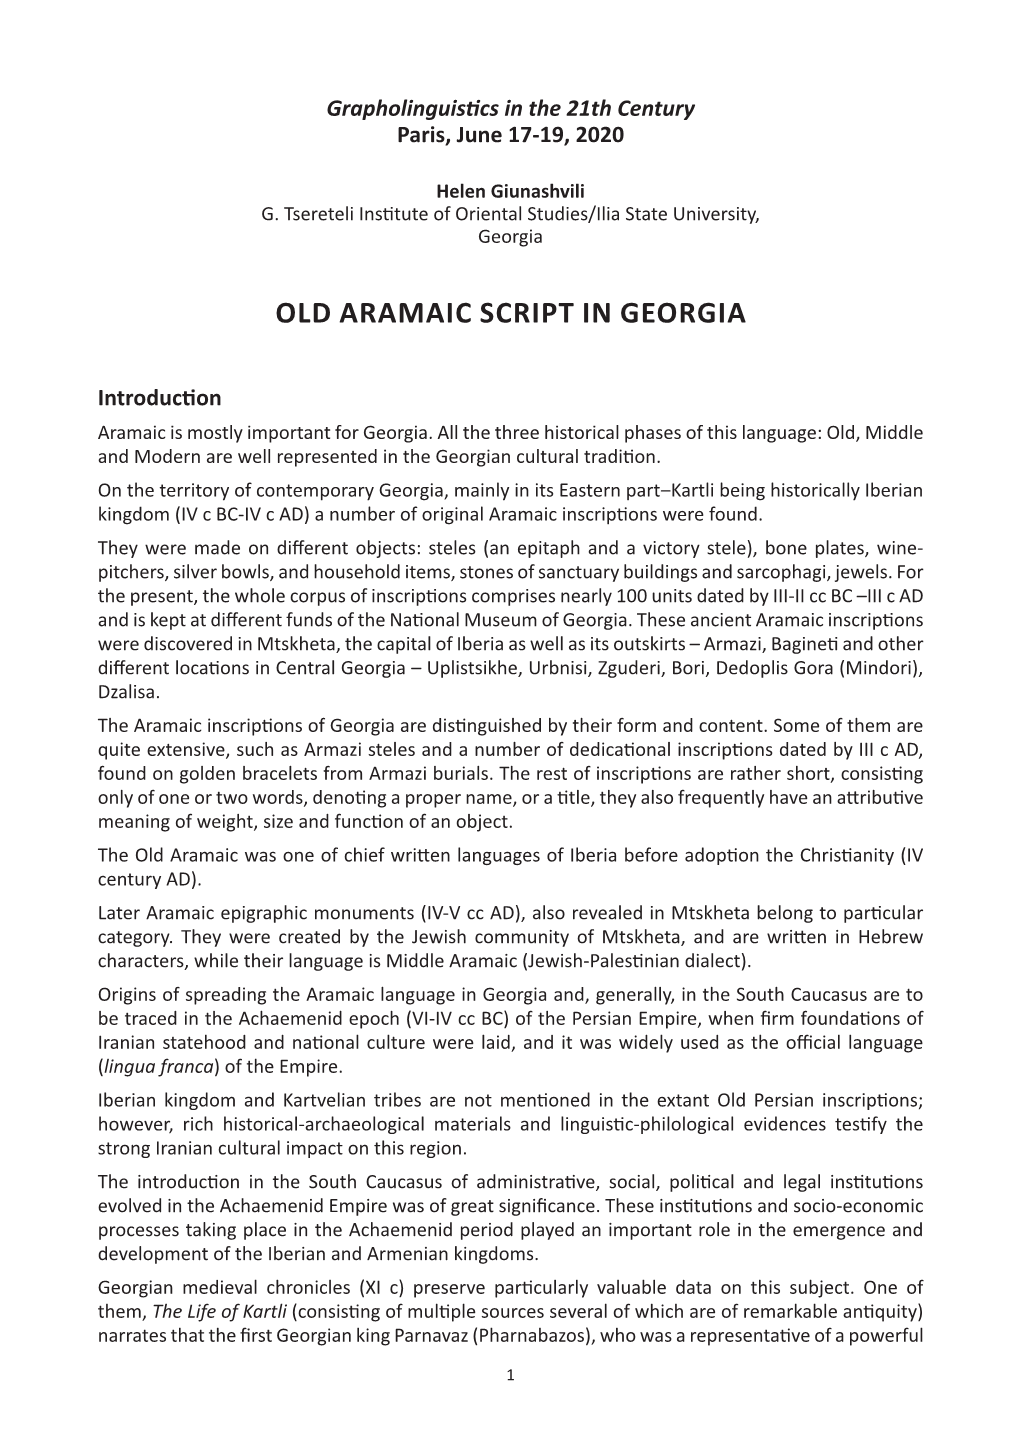 Old Aramaic Script in Georgia